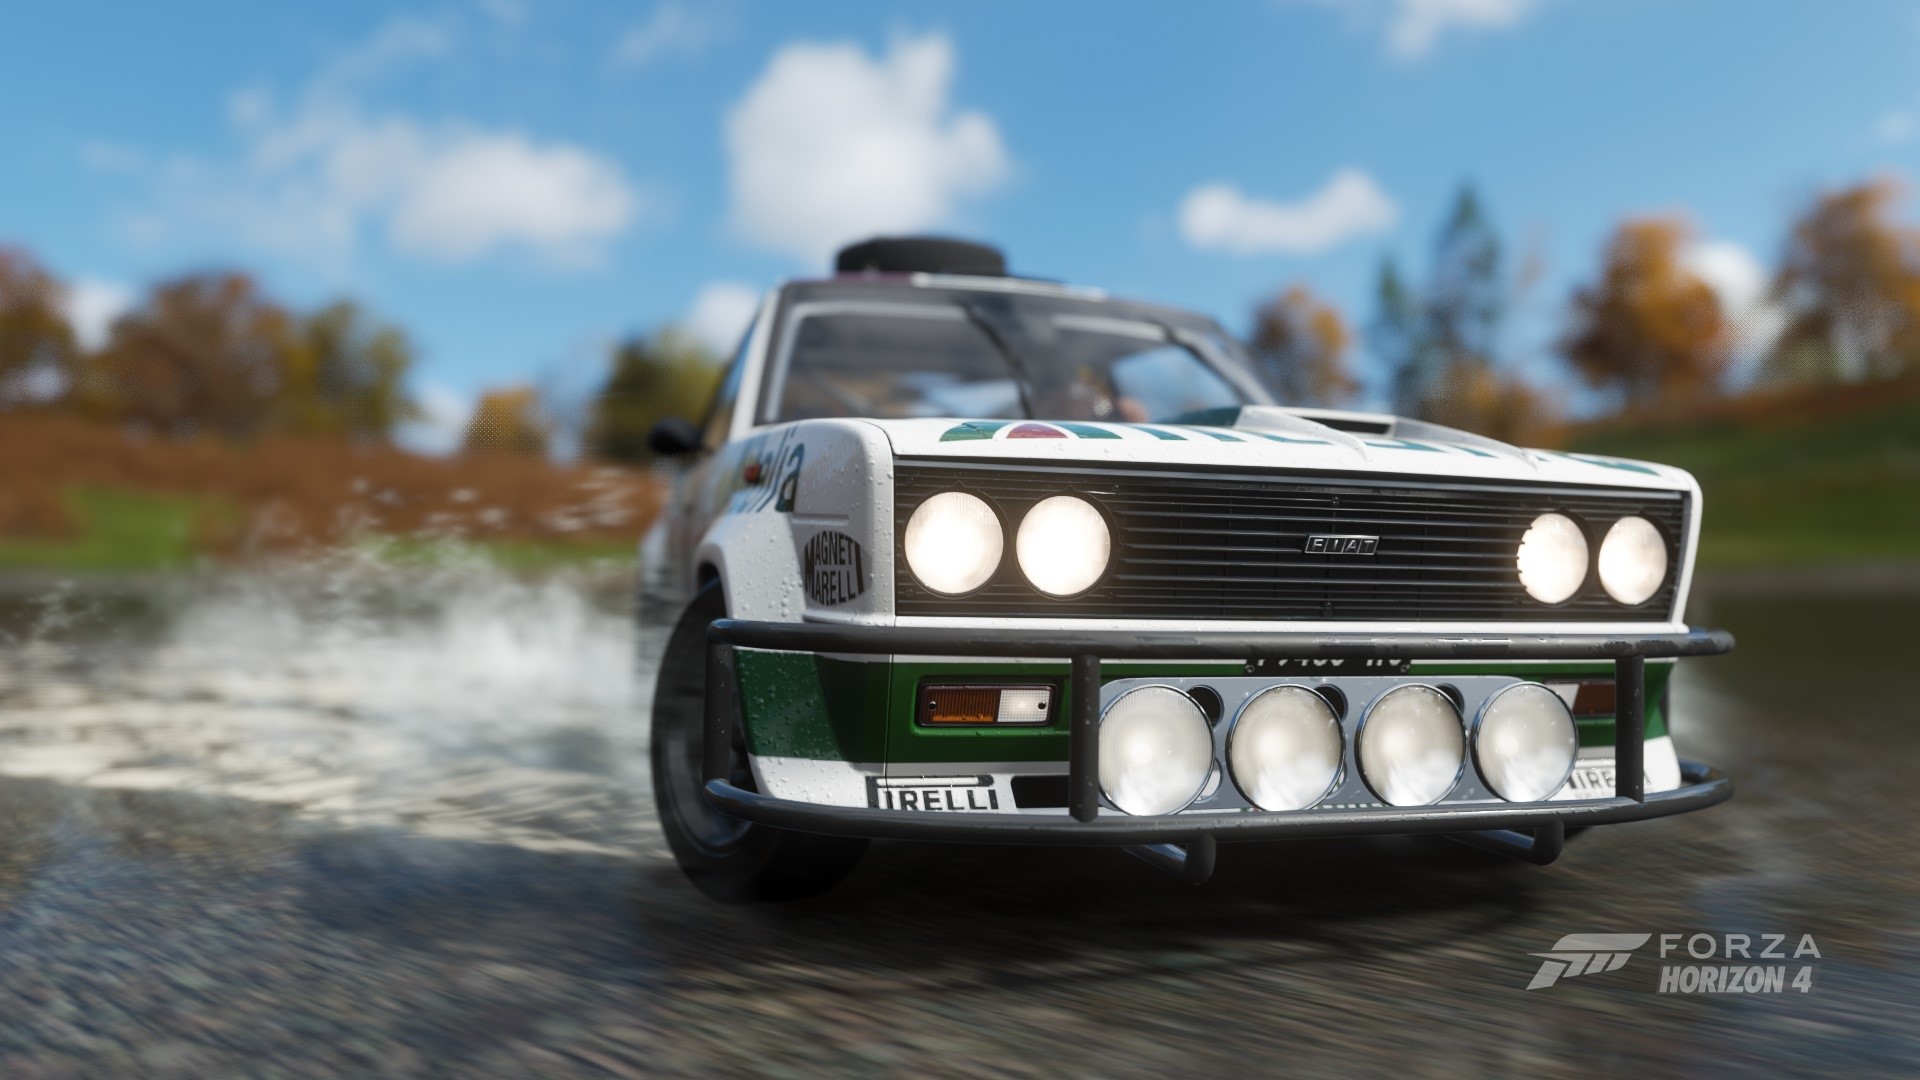 fiat Forza, rally cars, Rally, lake, Forza Horizon 4 Gallery HD Wallpaper